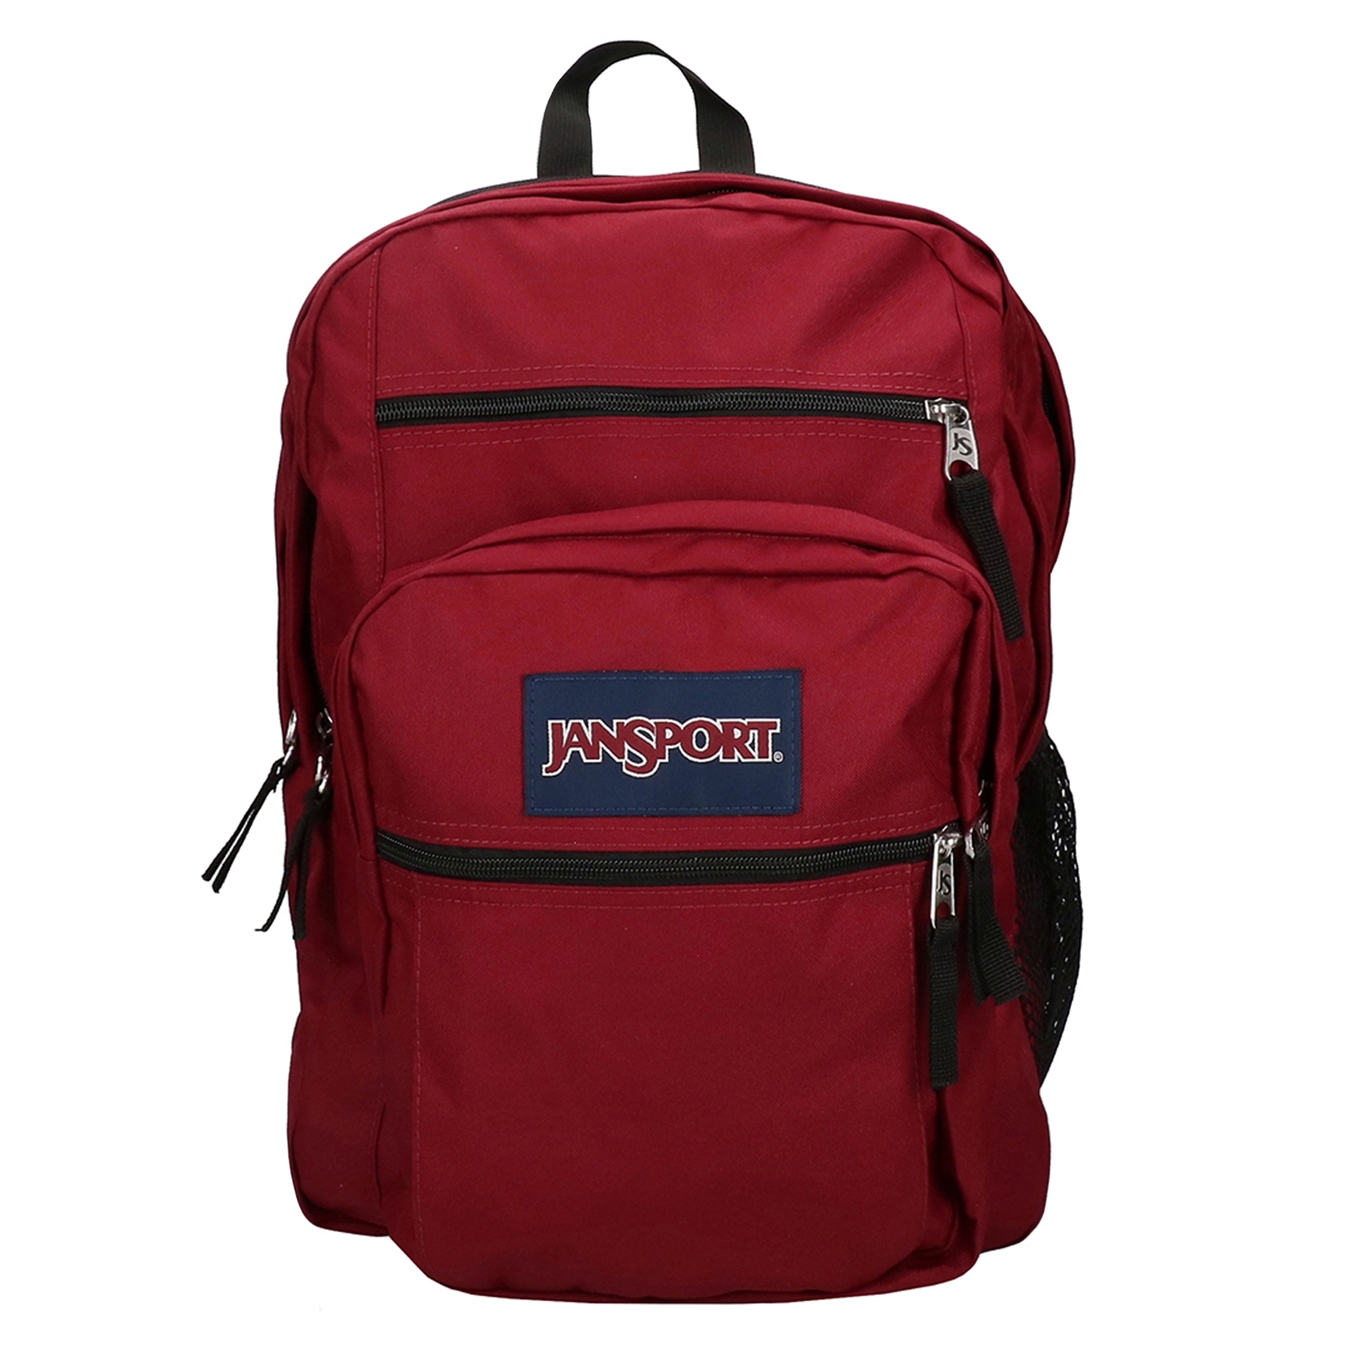 JanSport Big Student russet red backpack